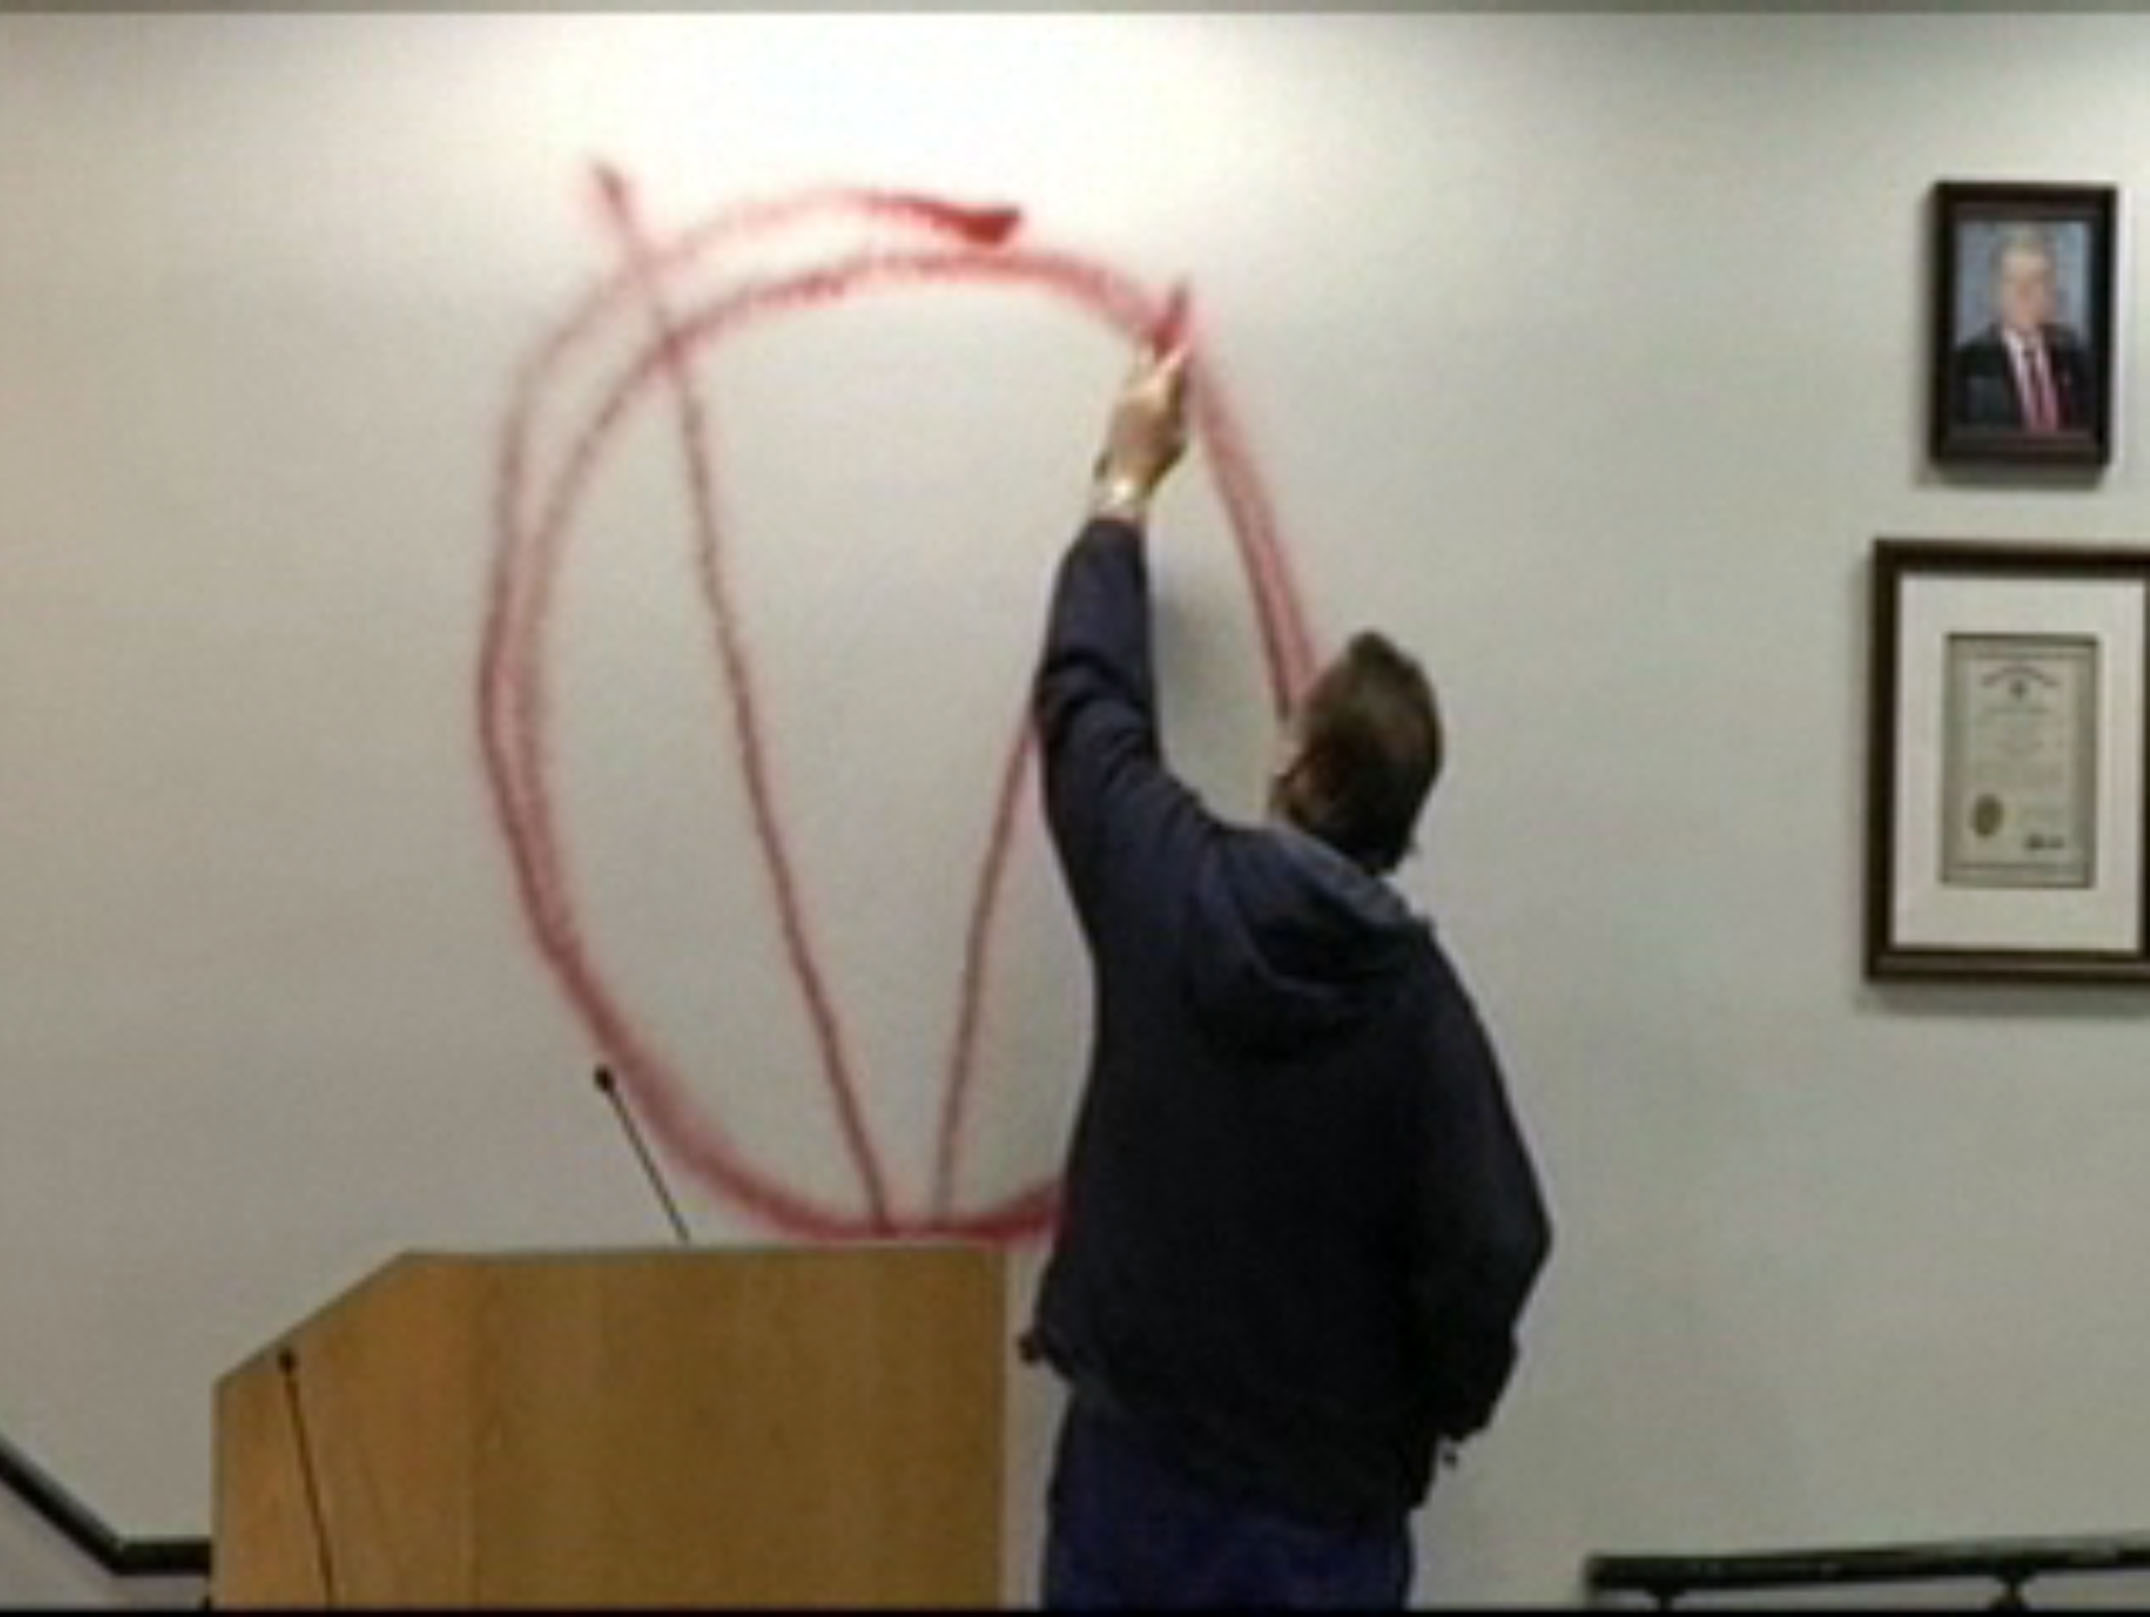 Han inledde med att rita ett "V" med en cirkel runt. V som i Vendetta. 